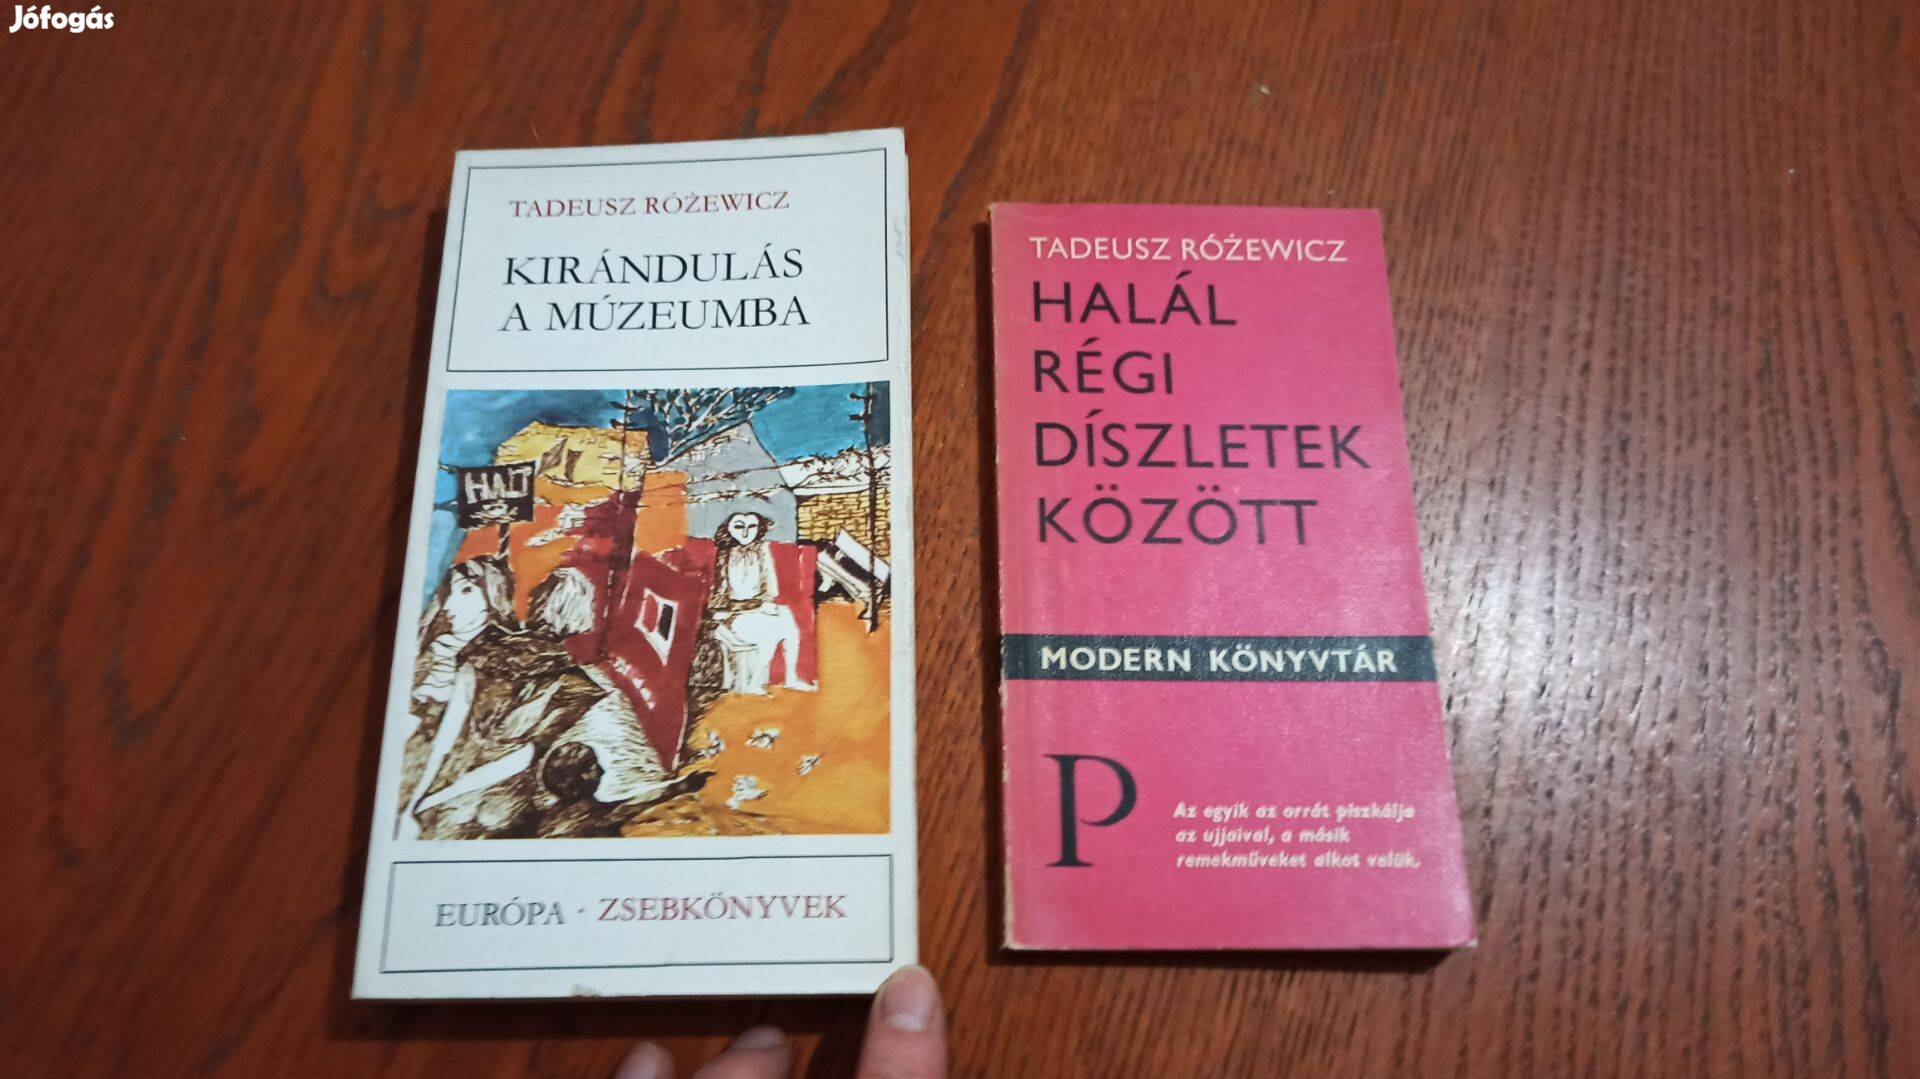 Tadeusz Różewicz könyvek